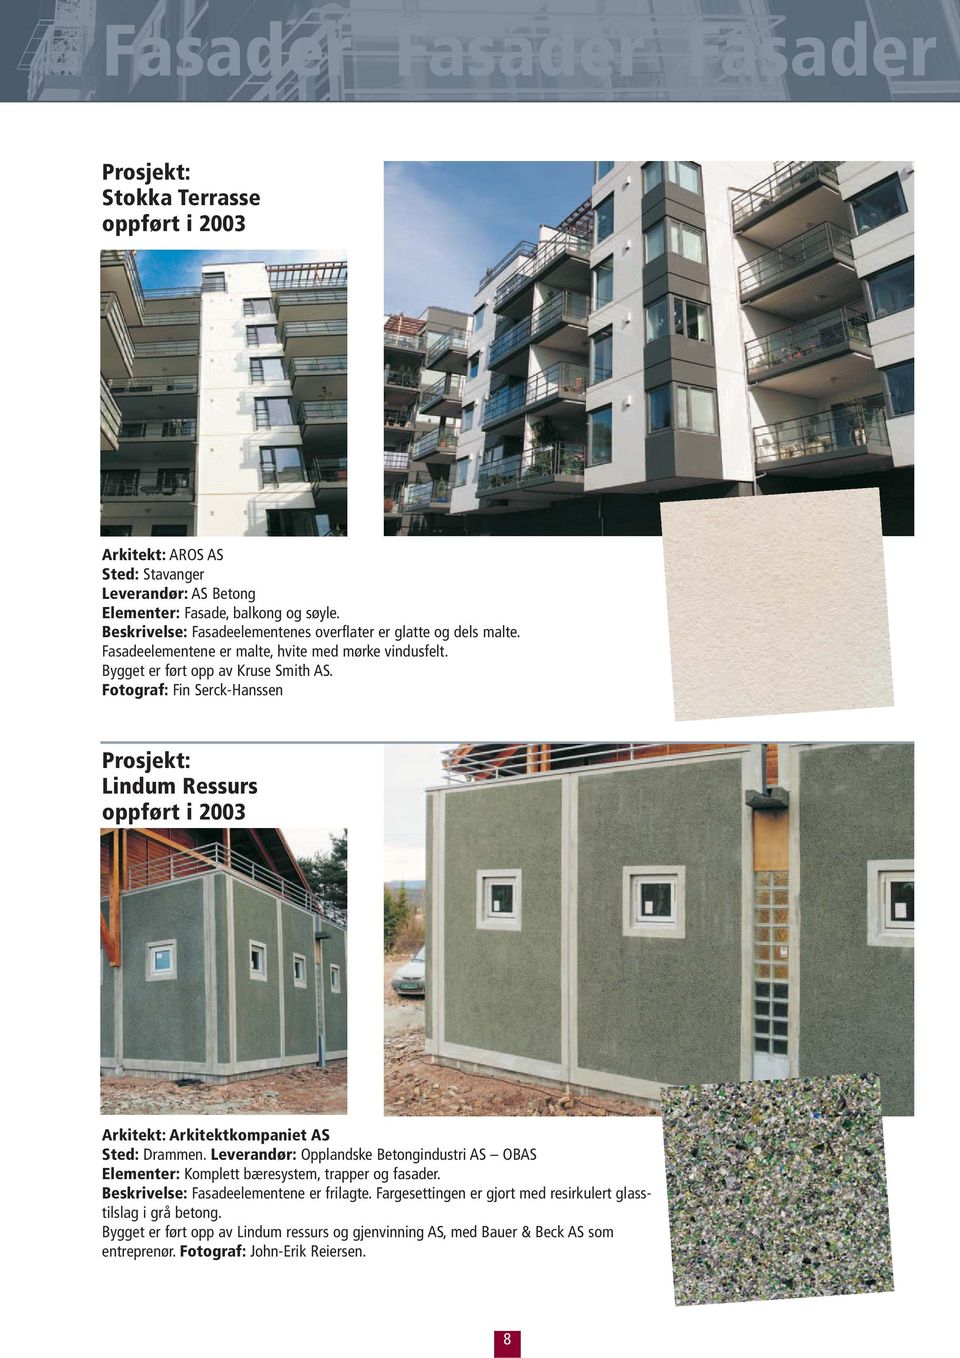 Lindum Ressurs oppført i 2003 Arkitekt: Arkitektkompaniet AS Sted: Drammen. Leverandør: Opplandske Betongindustri AS OBAS Elementer: Komplett bæresystem, trapper og fasader.